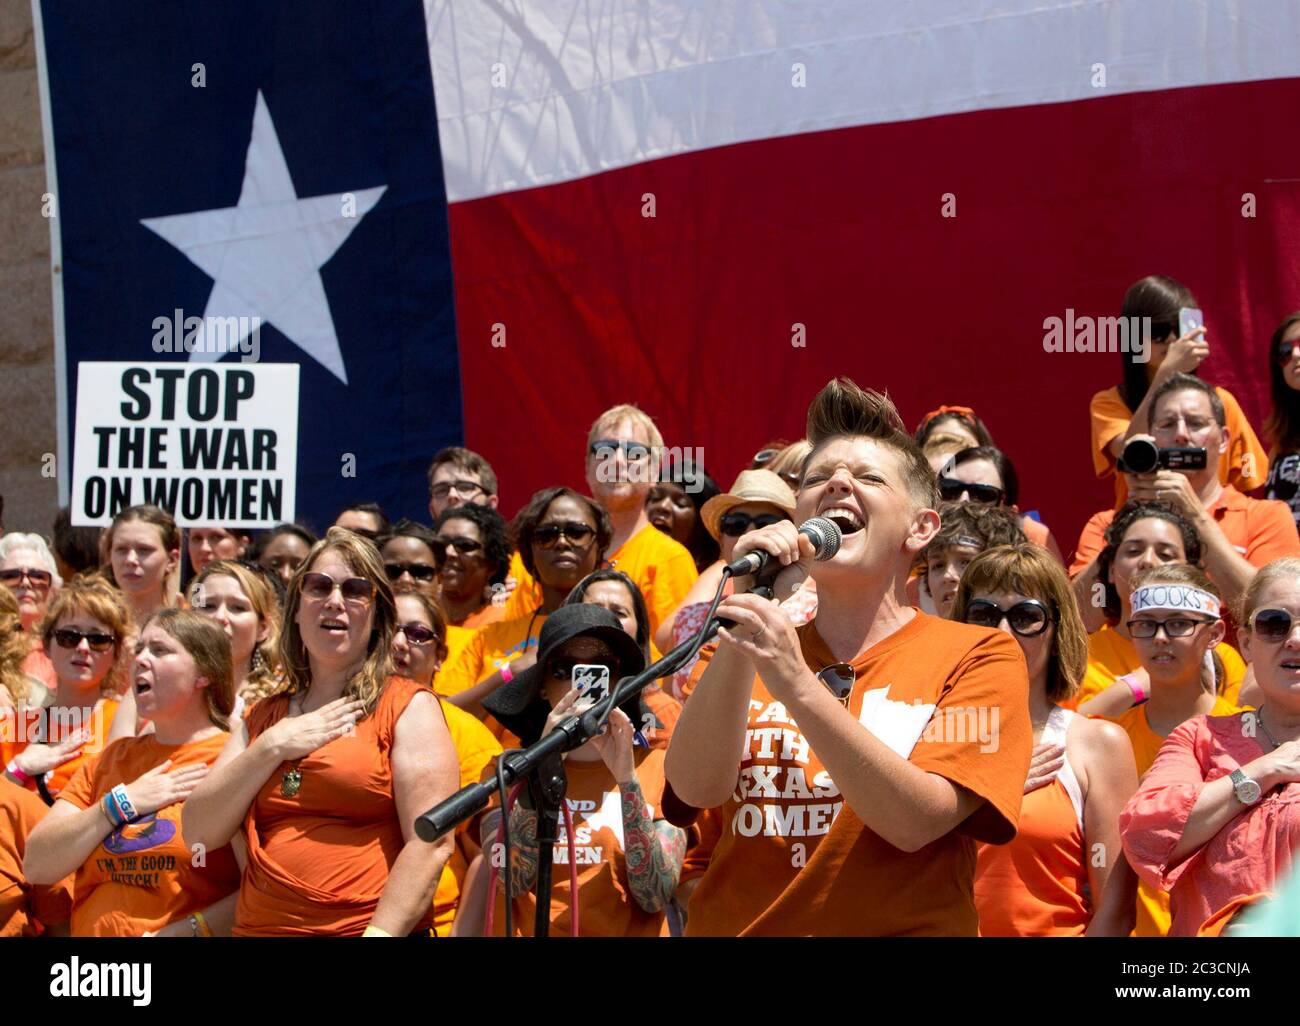 1 juillet 2013 Austin, Texas États-Unis : Une jeune femme portant un maillot Stand with Texas Women chante l'hymne national devant une foule de partisans du choix lors d'un rassemblement devant le Capitole du Texas avant le début d'une deuxième session législative spéciale appelée à examiner des limites controversées sur l'accès des femmes à l'avortement. ©Bob Daemmrich Banque D'Images